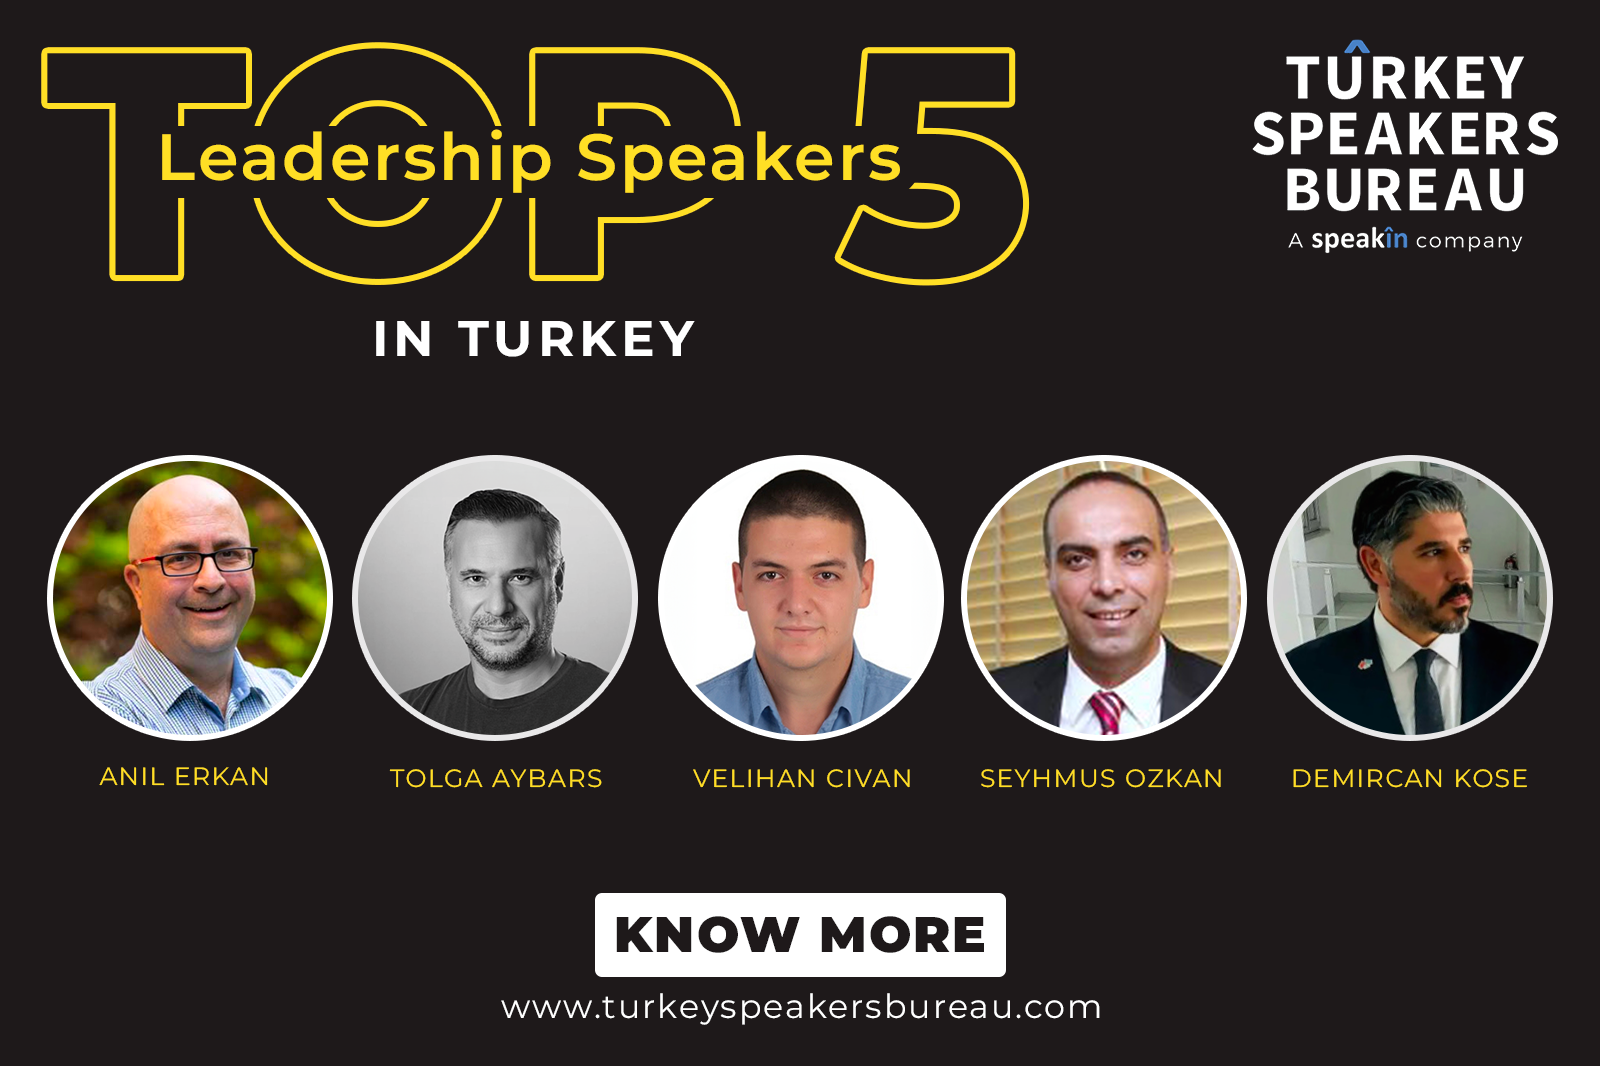 Top 5 Leadership Speakers in Turkey